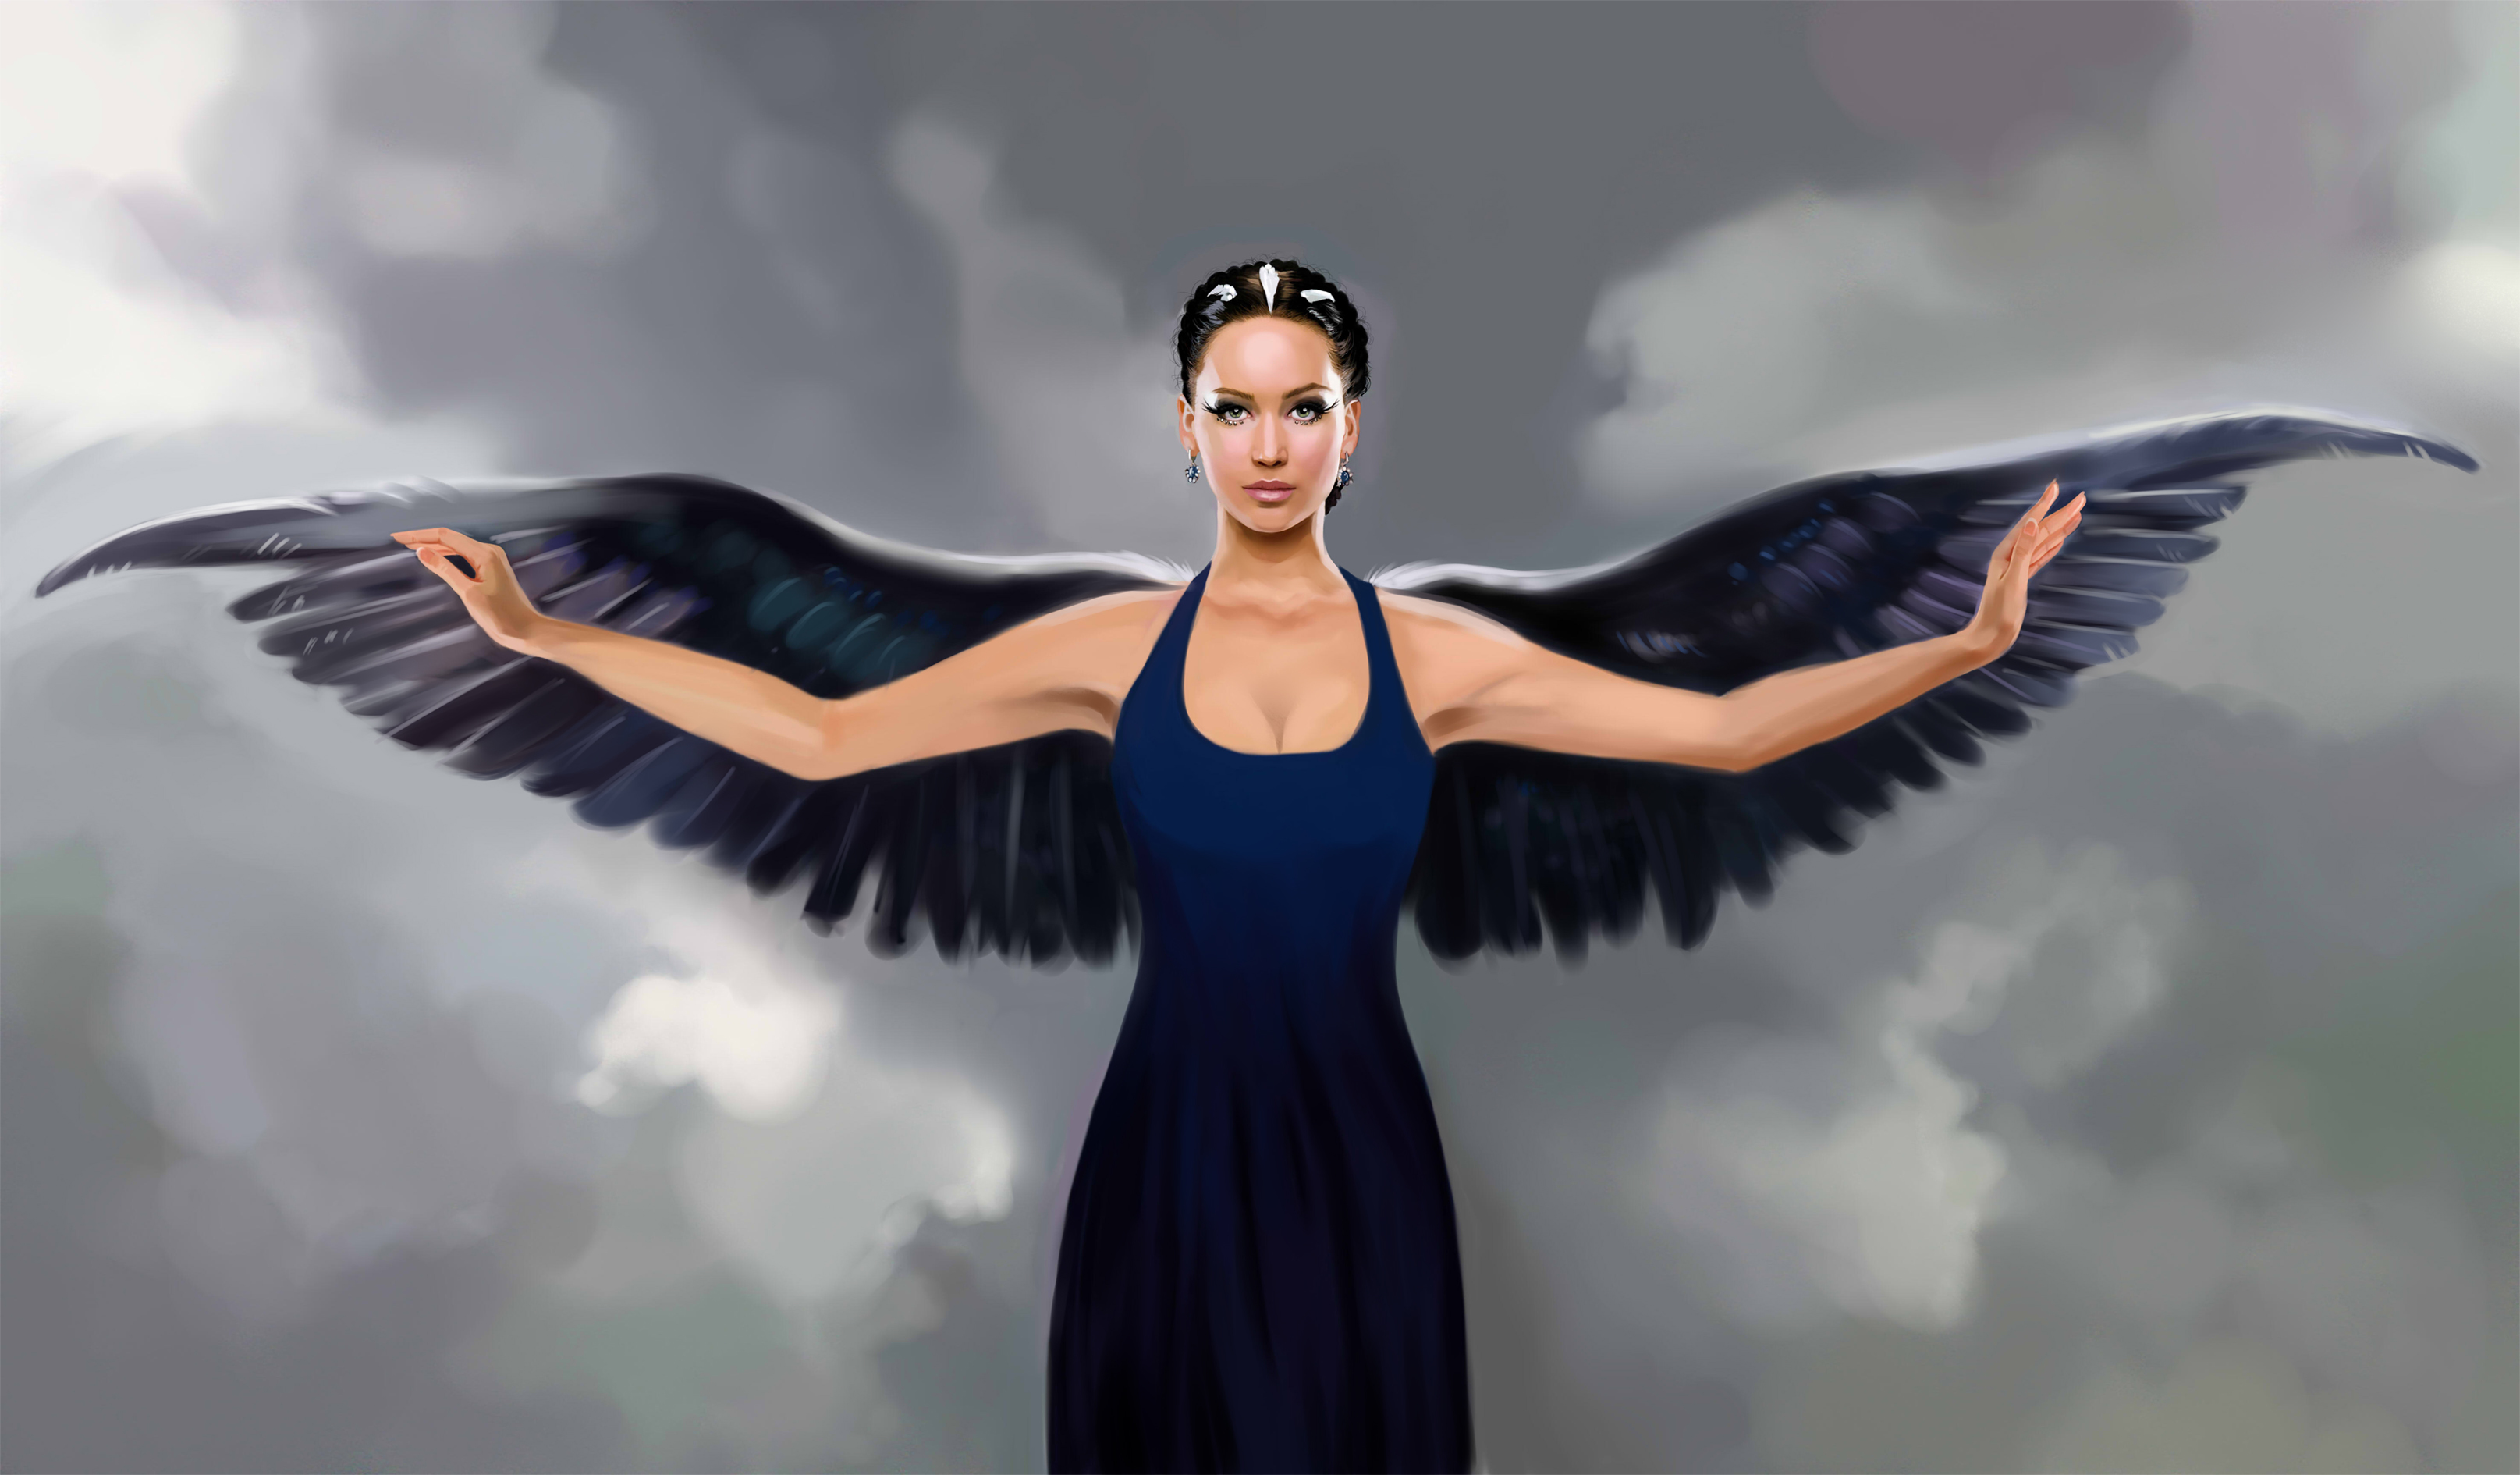 Fantasy Angel by Marta De Winter